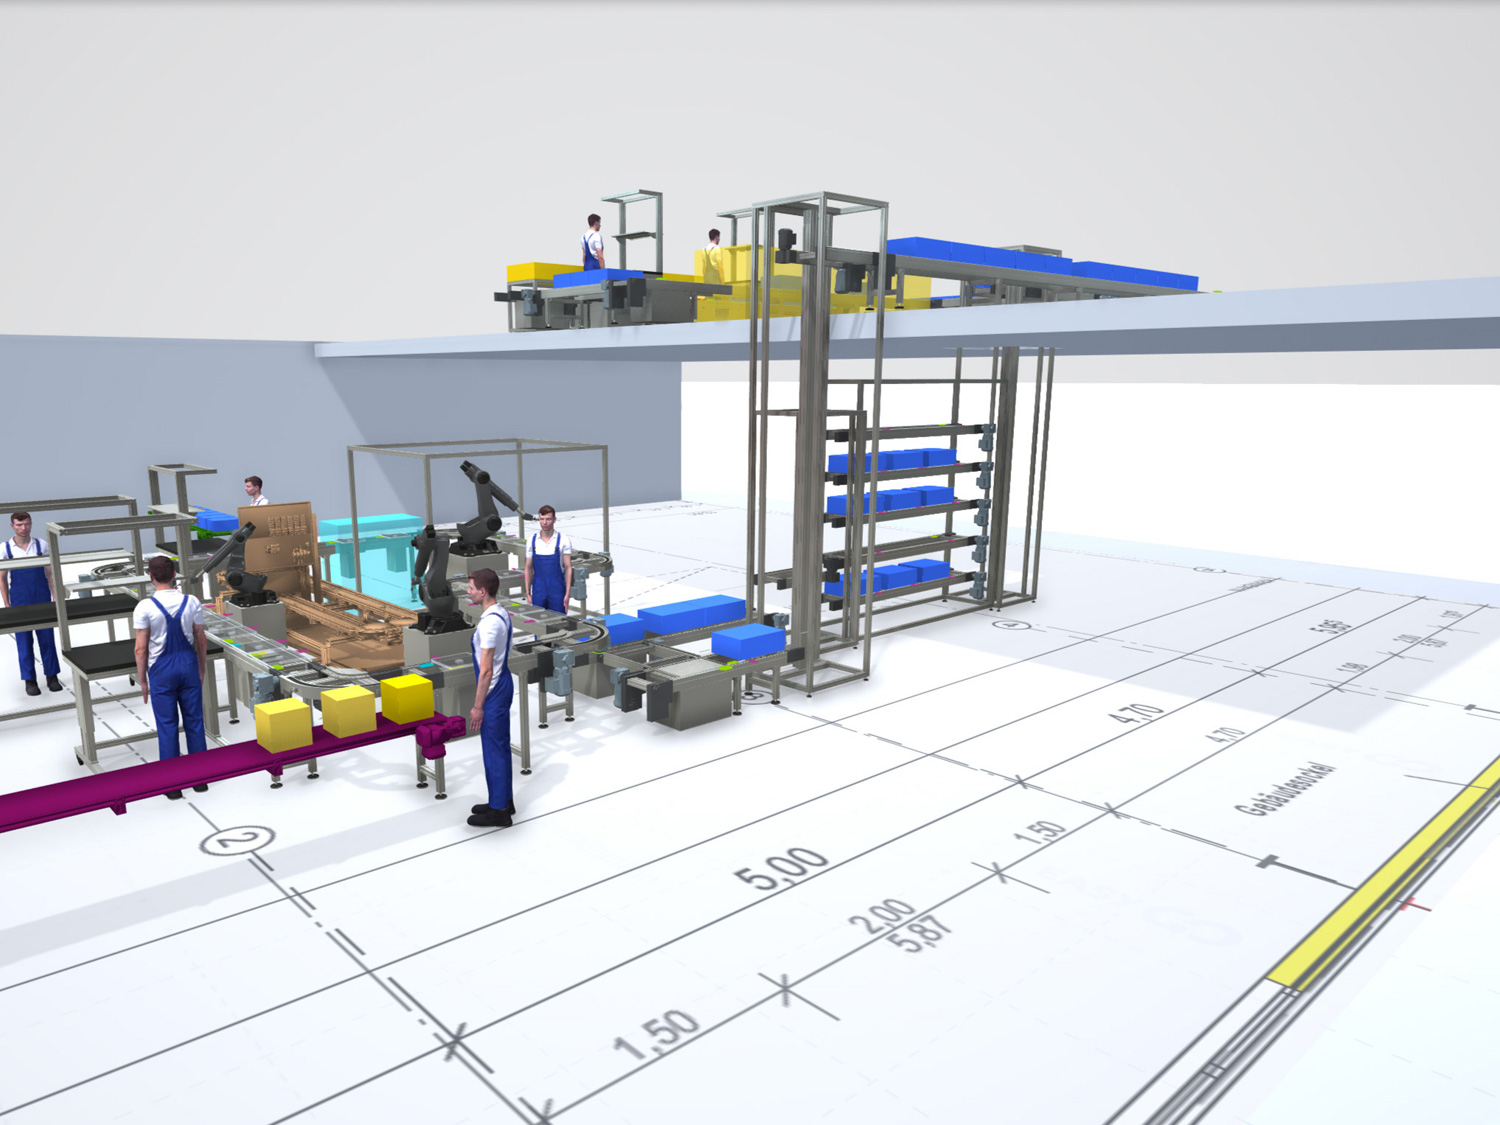 Auch Planungen über verschiedene Etagen sind möglich: durch den Einsatz von Dummy-Modellen, selbst importierten 3D-CAD-Modellen und 2D-Hallenlayouts werden die Anlagendimensionen und -prozesse nachvollziehbar visualisiert <i>(Bildquelle: Schnaithmann Maschinenbau GmbH)</i>